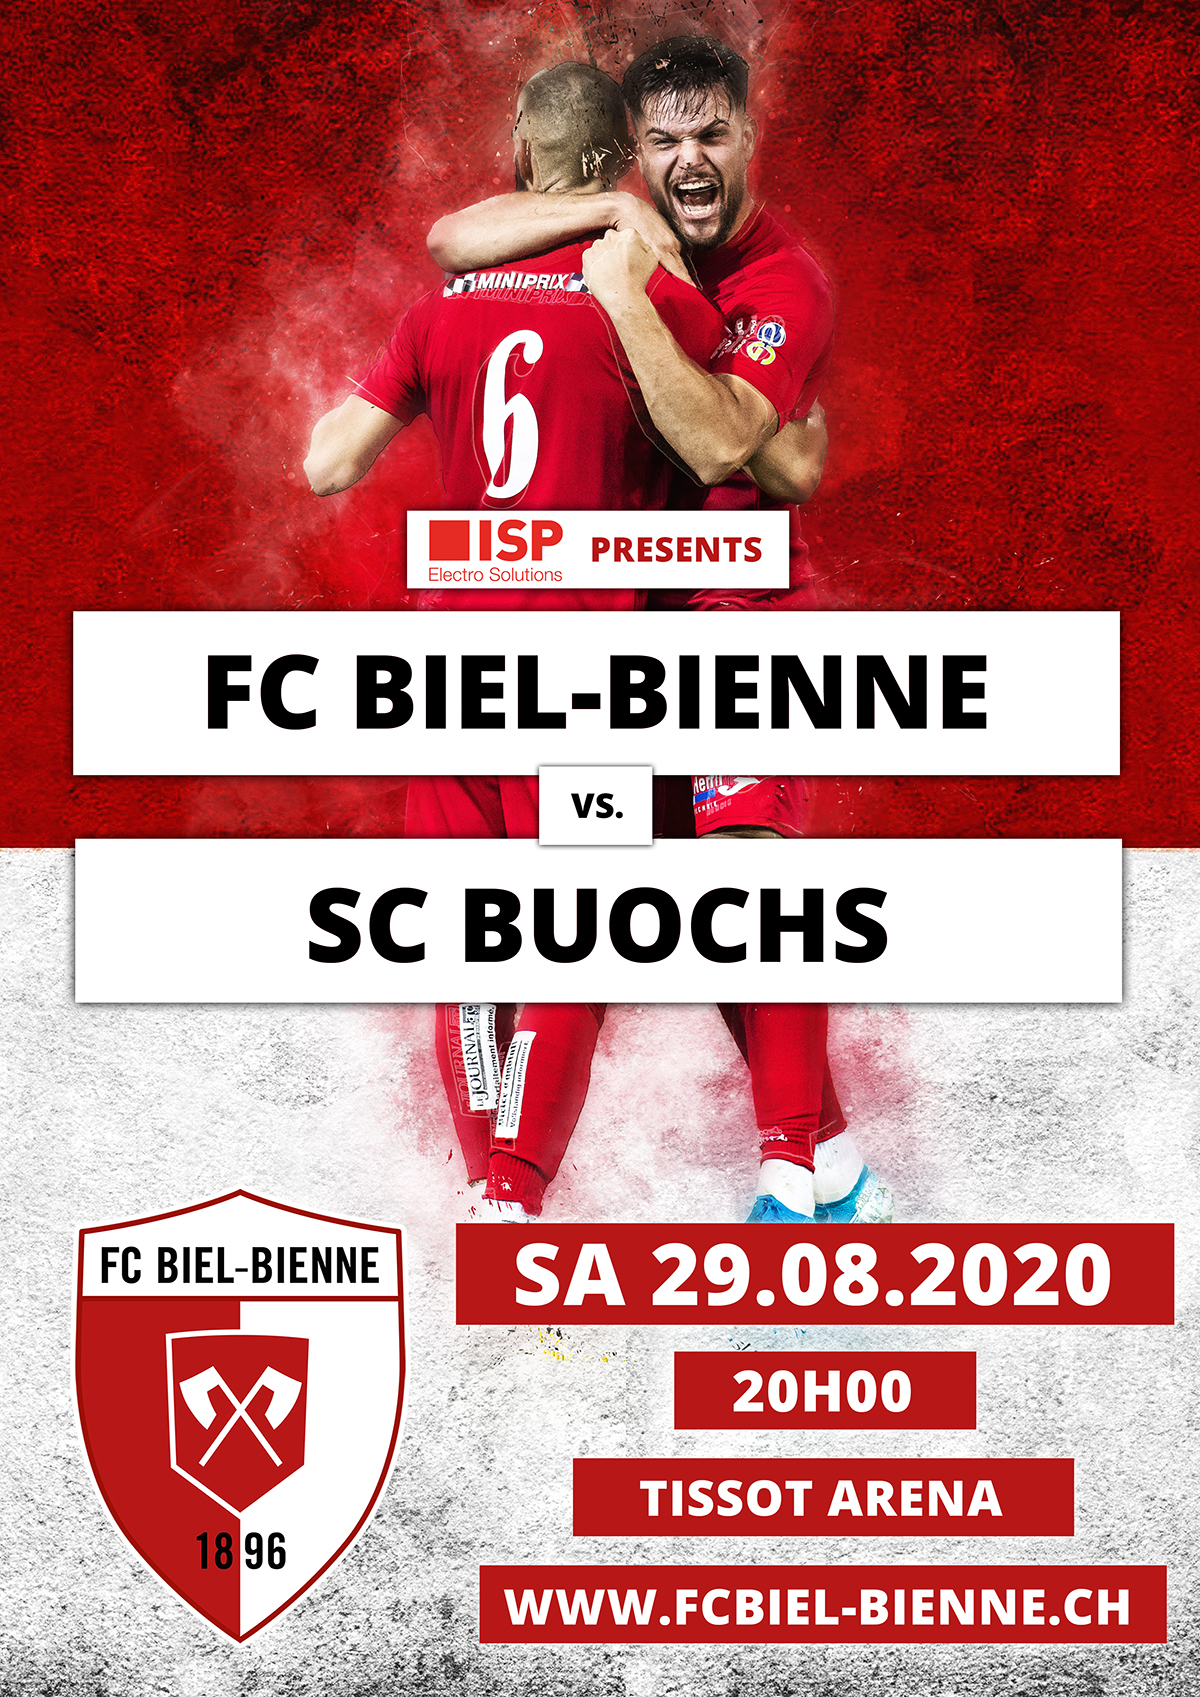 FC Biel-Bienne vs. SC Buochs